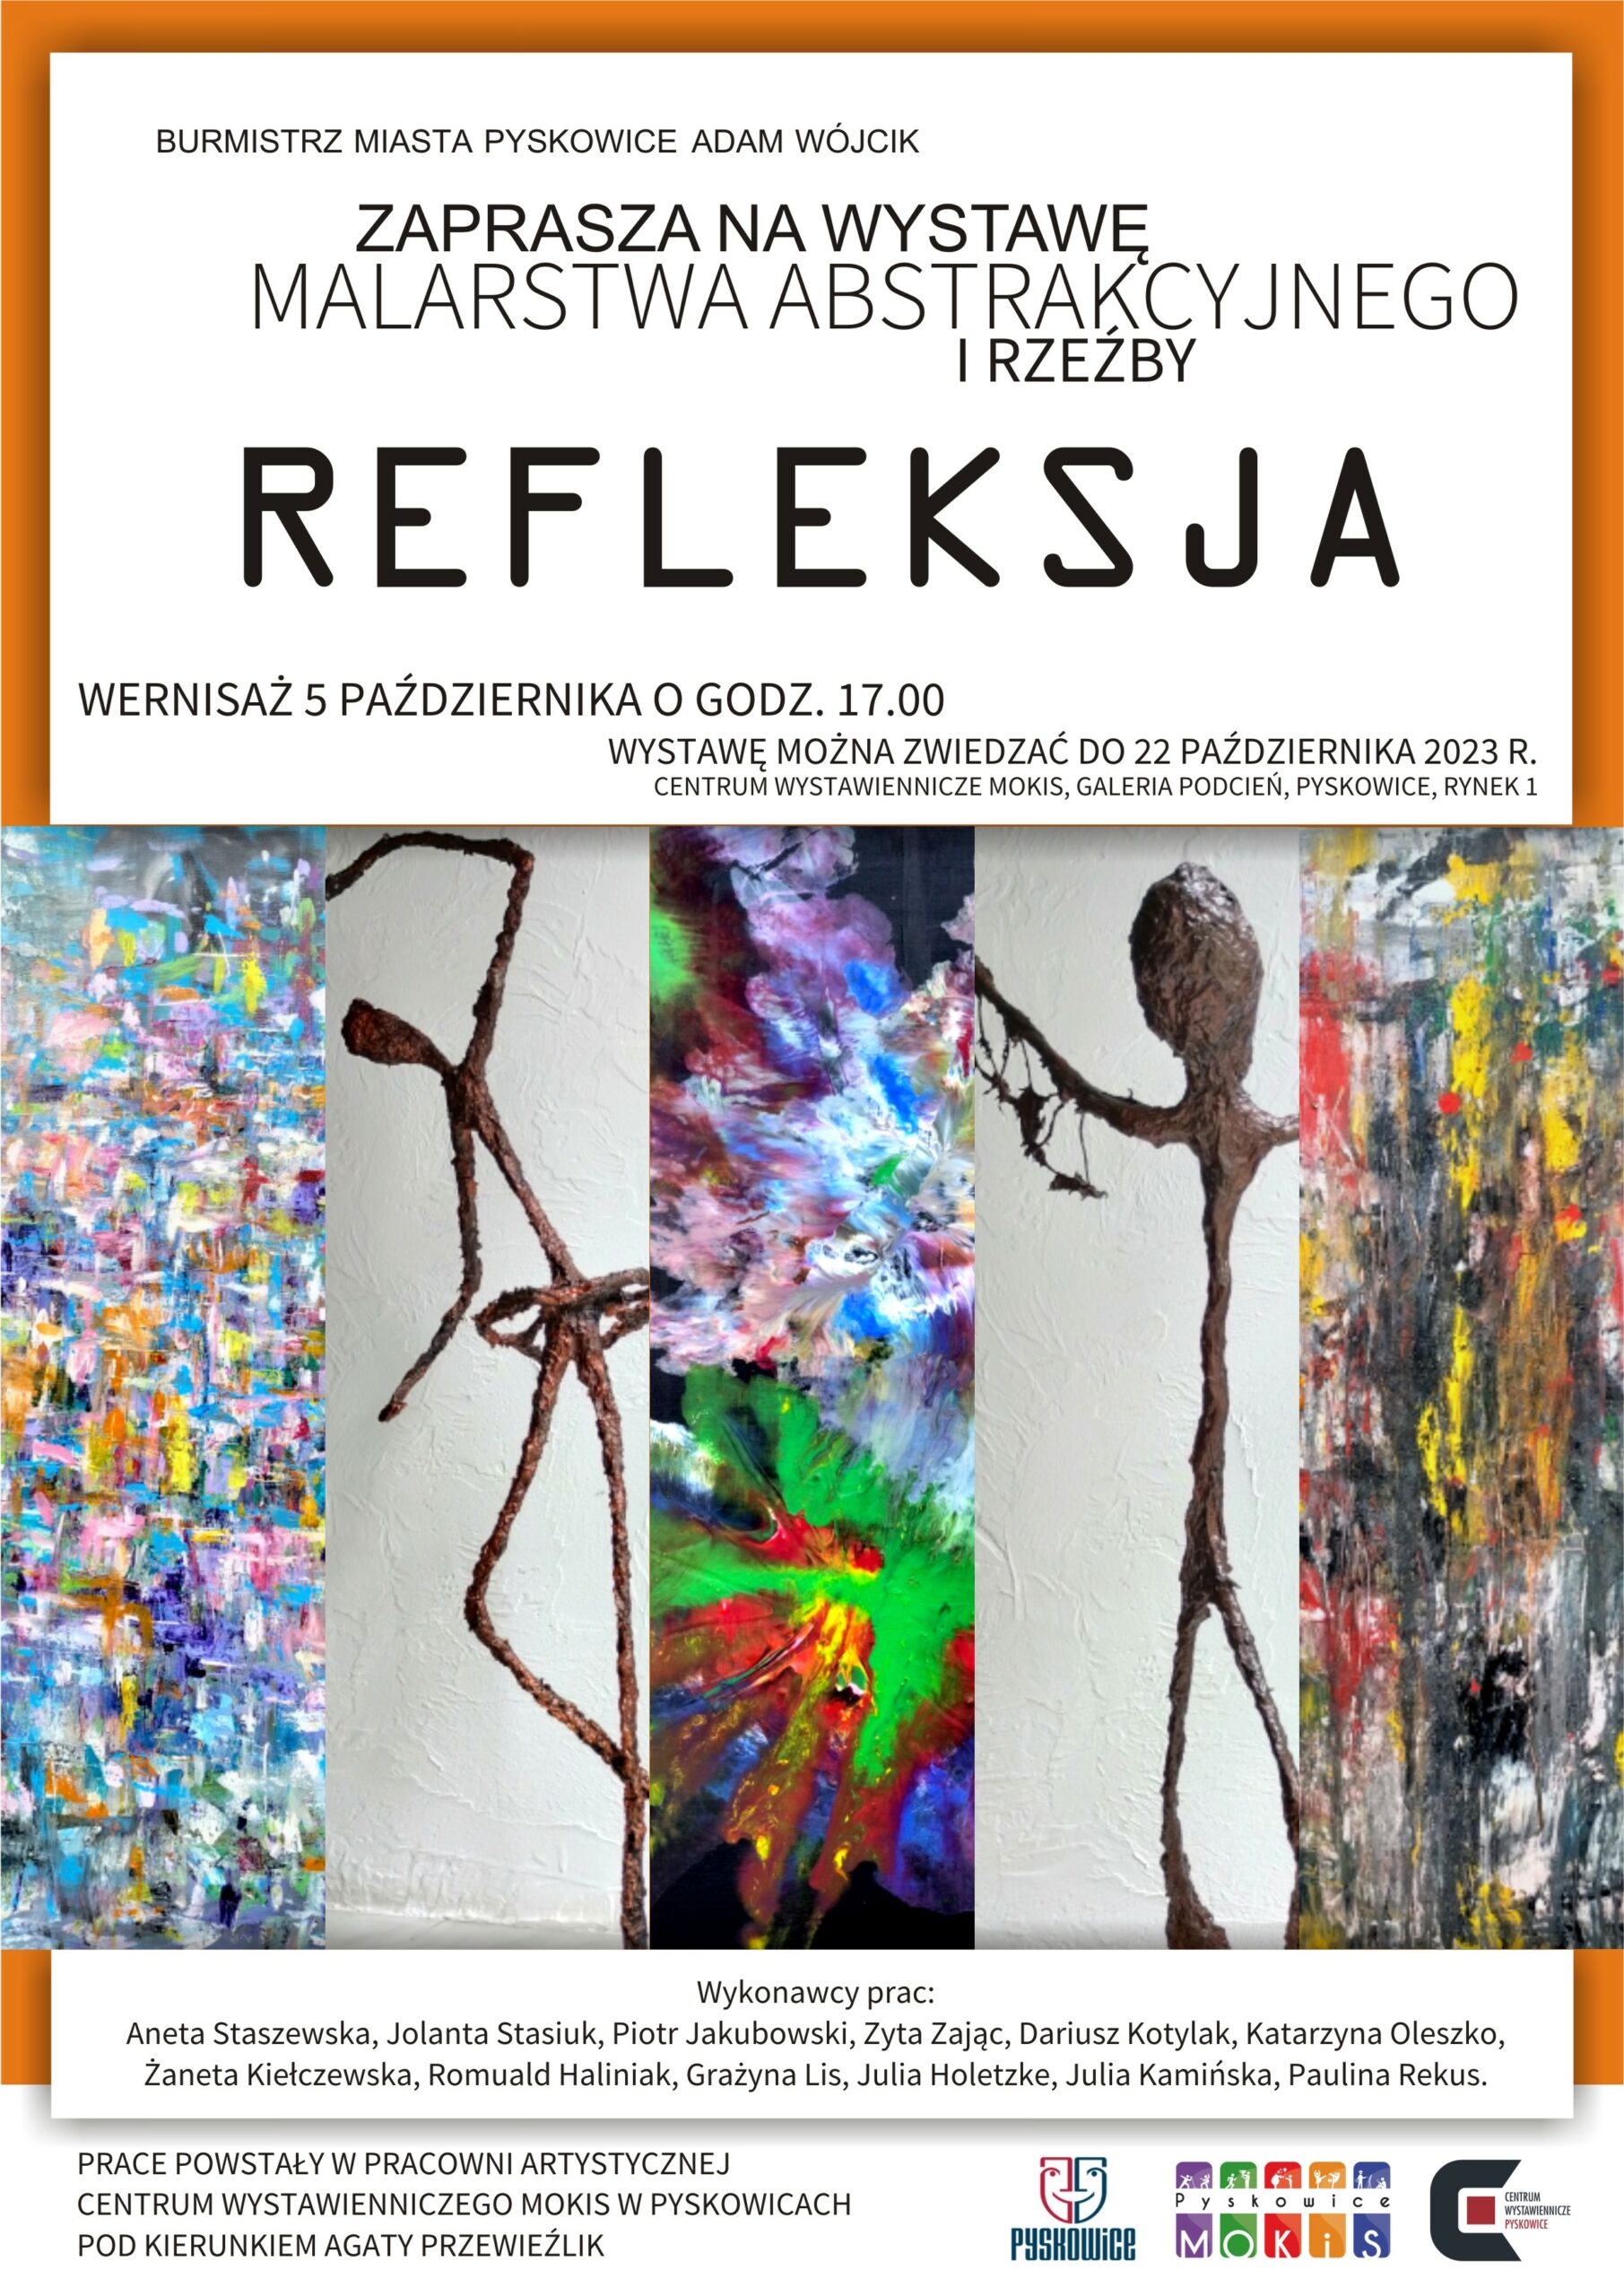 Wystawa malarstwa abstrakcyjnego i rzeźby „REFLEKSJA”